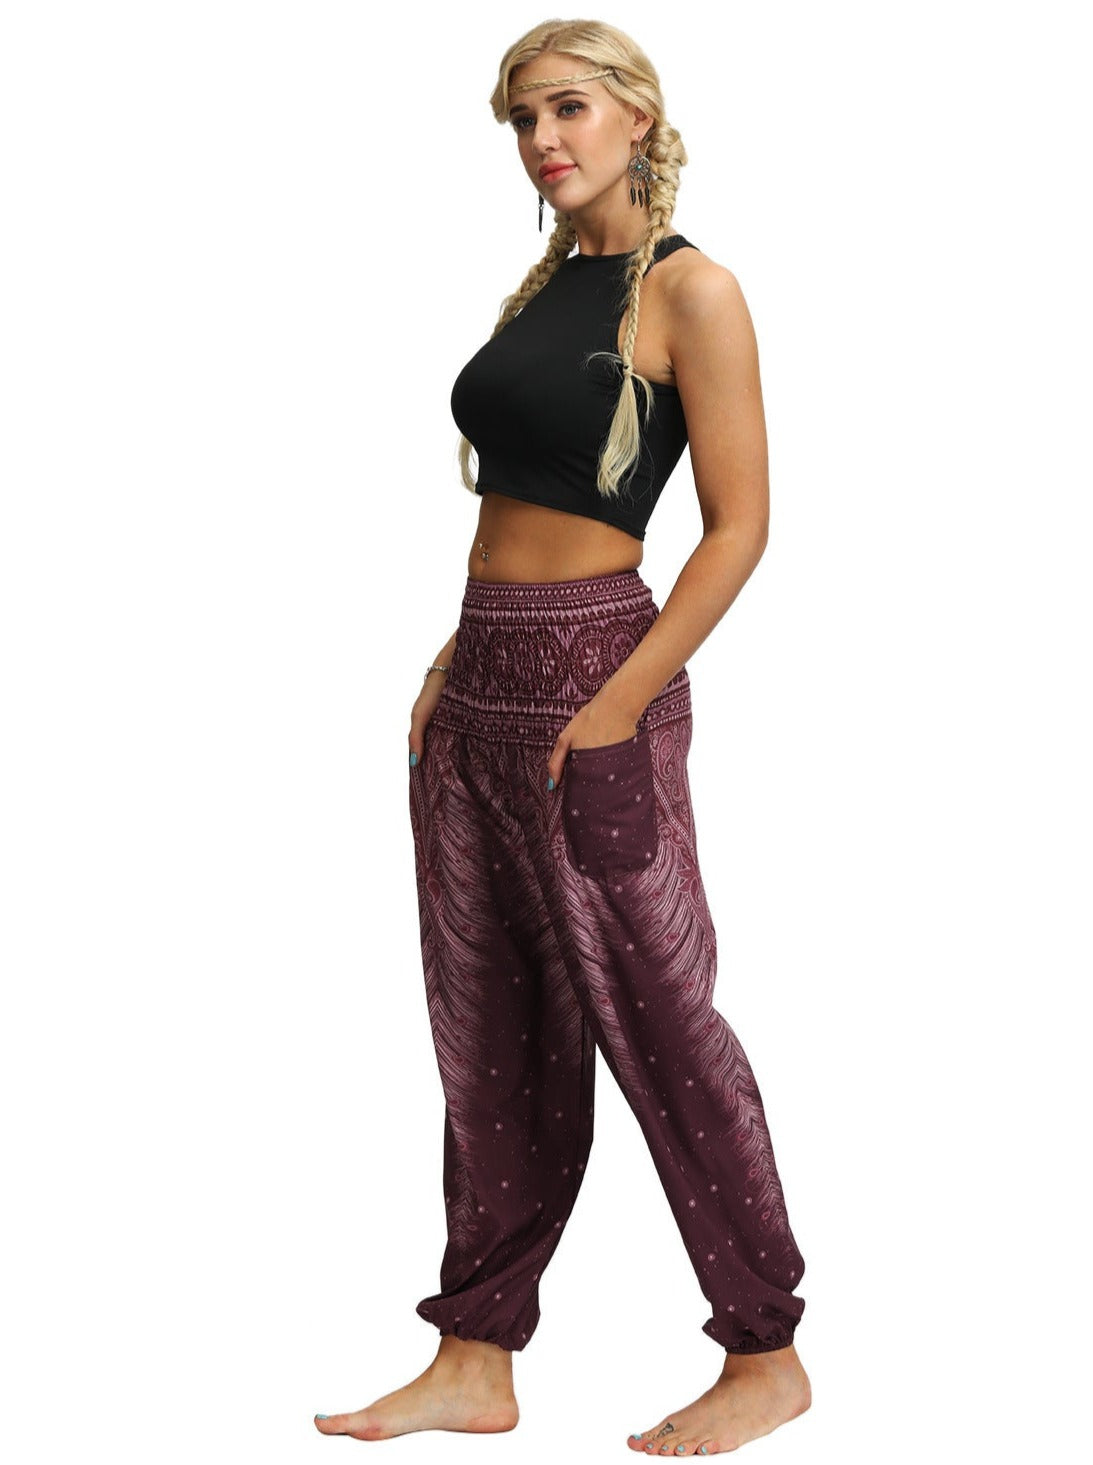 High-Waisted Digital Printed Yoga Dance Pants